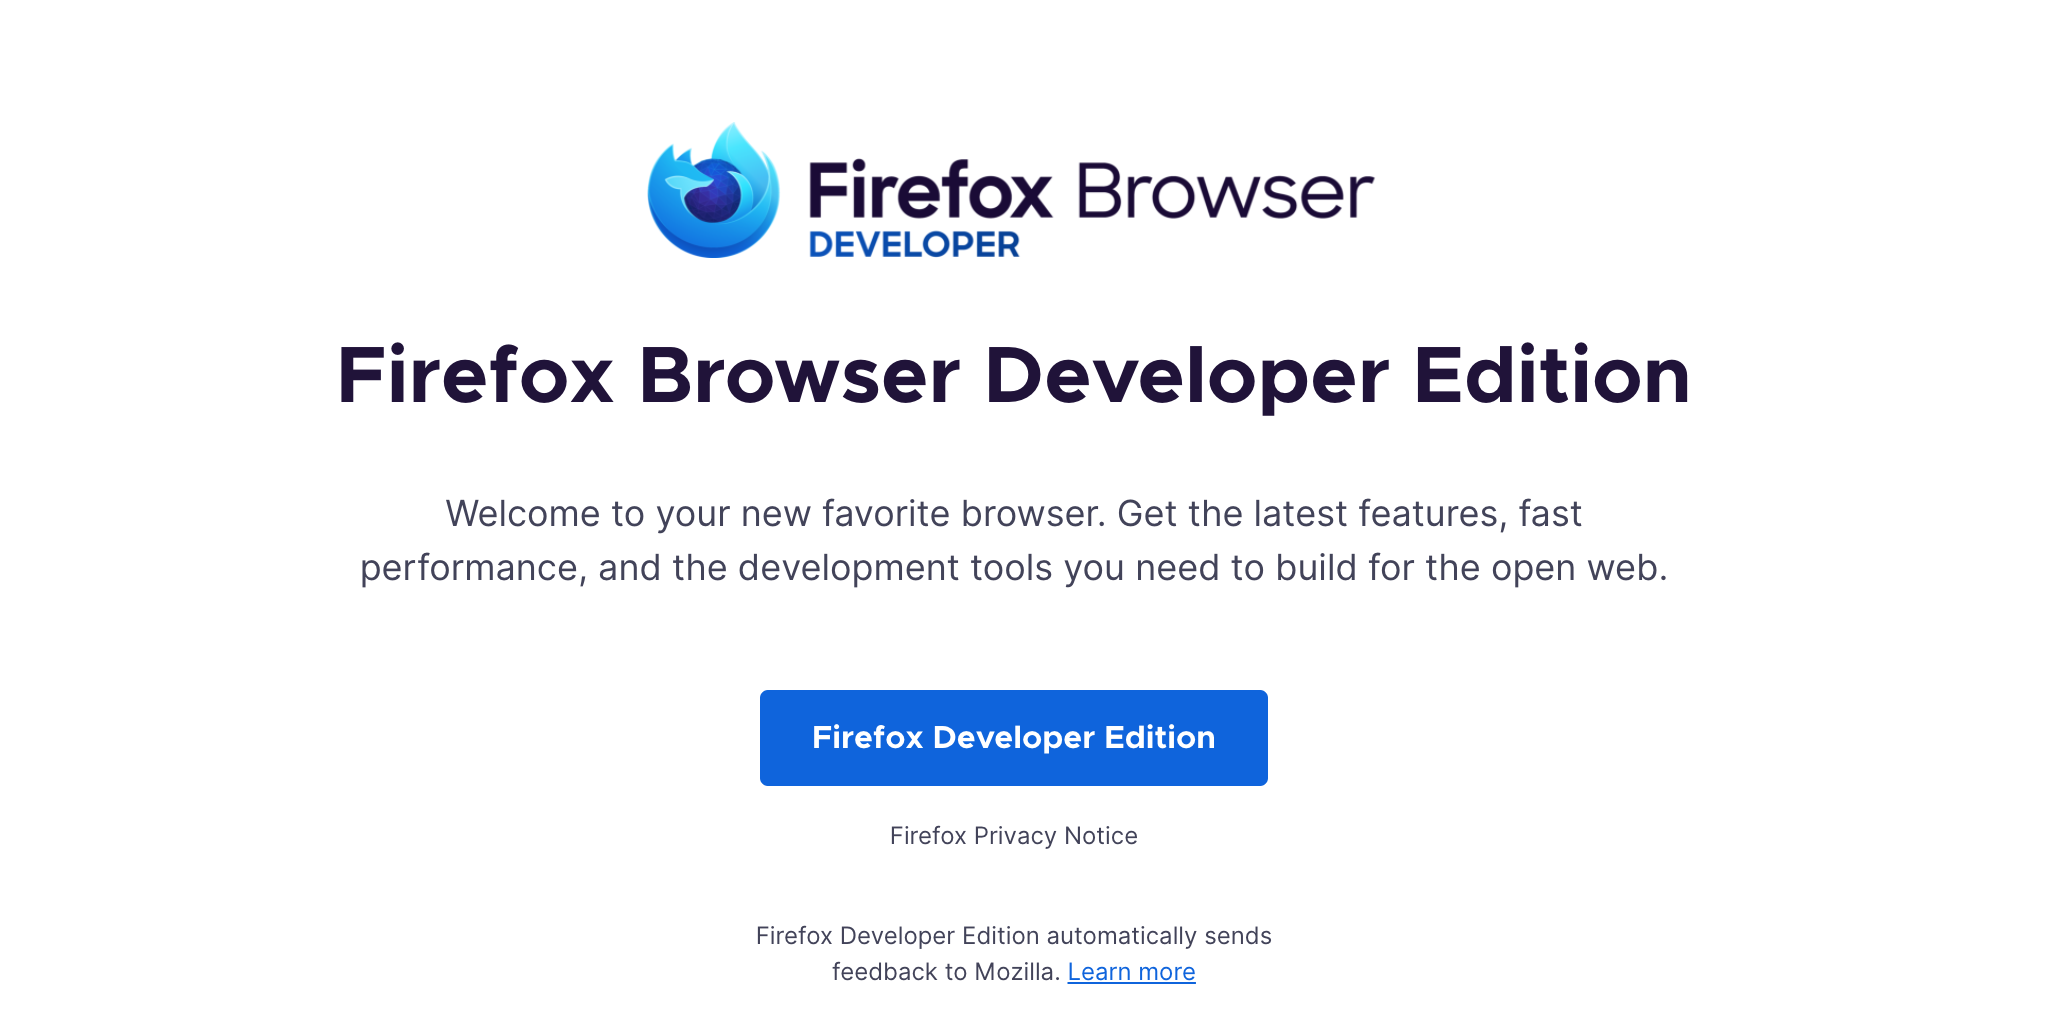 Stylish-Custom :: Add-ons for Firefox